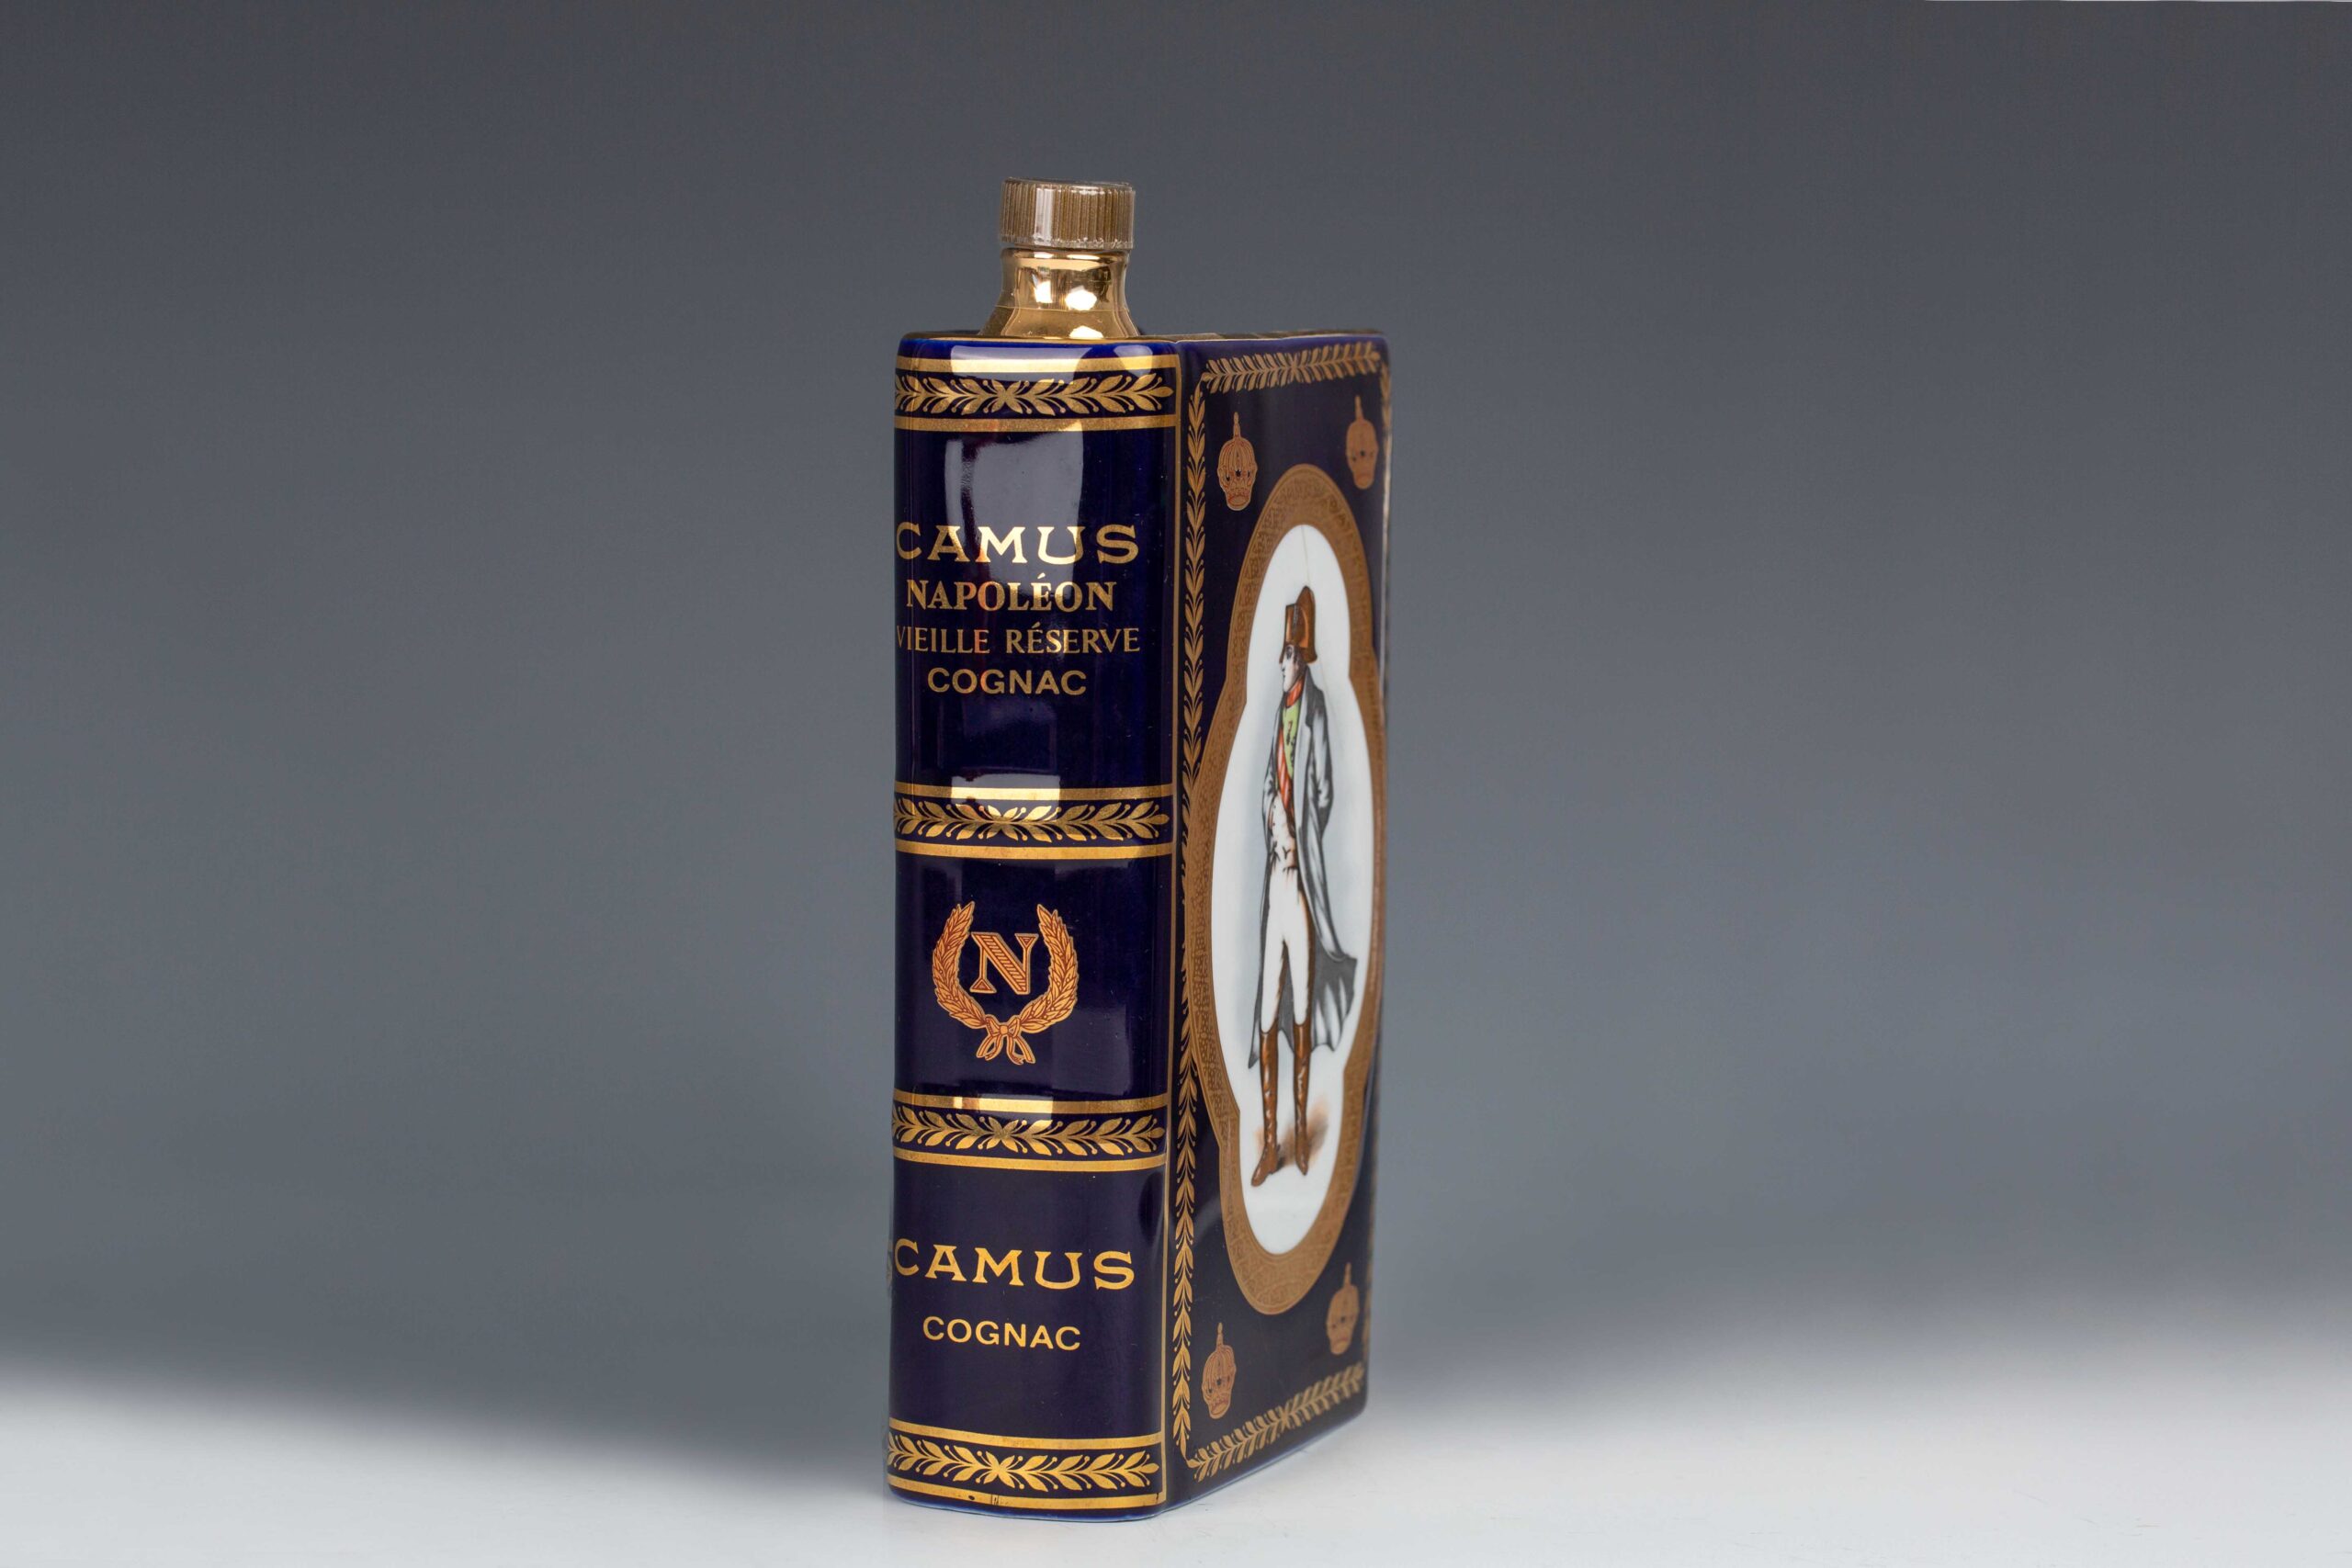 Vintage Camus Napoleon Cognac Ceramic Book Bicentenary – 200th